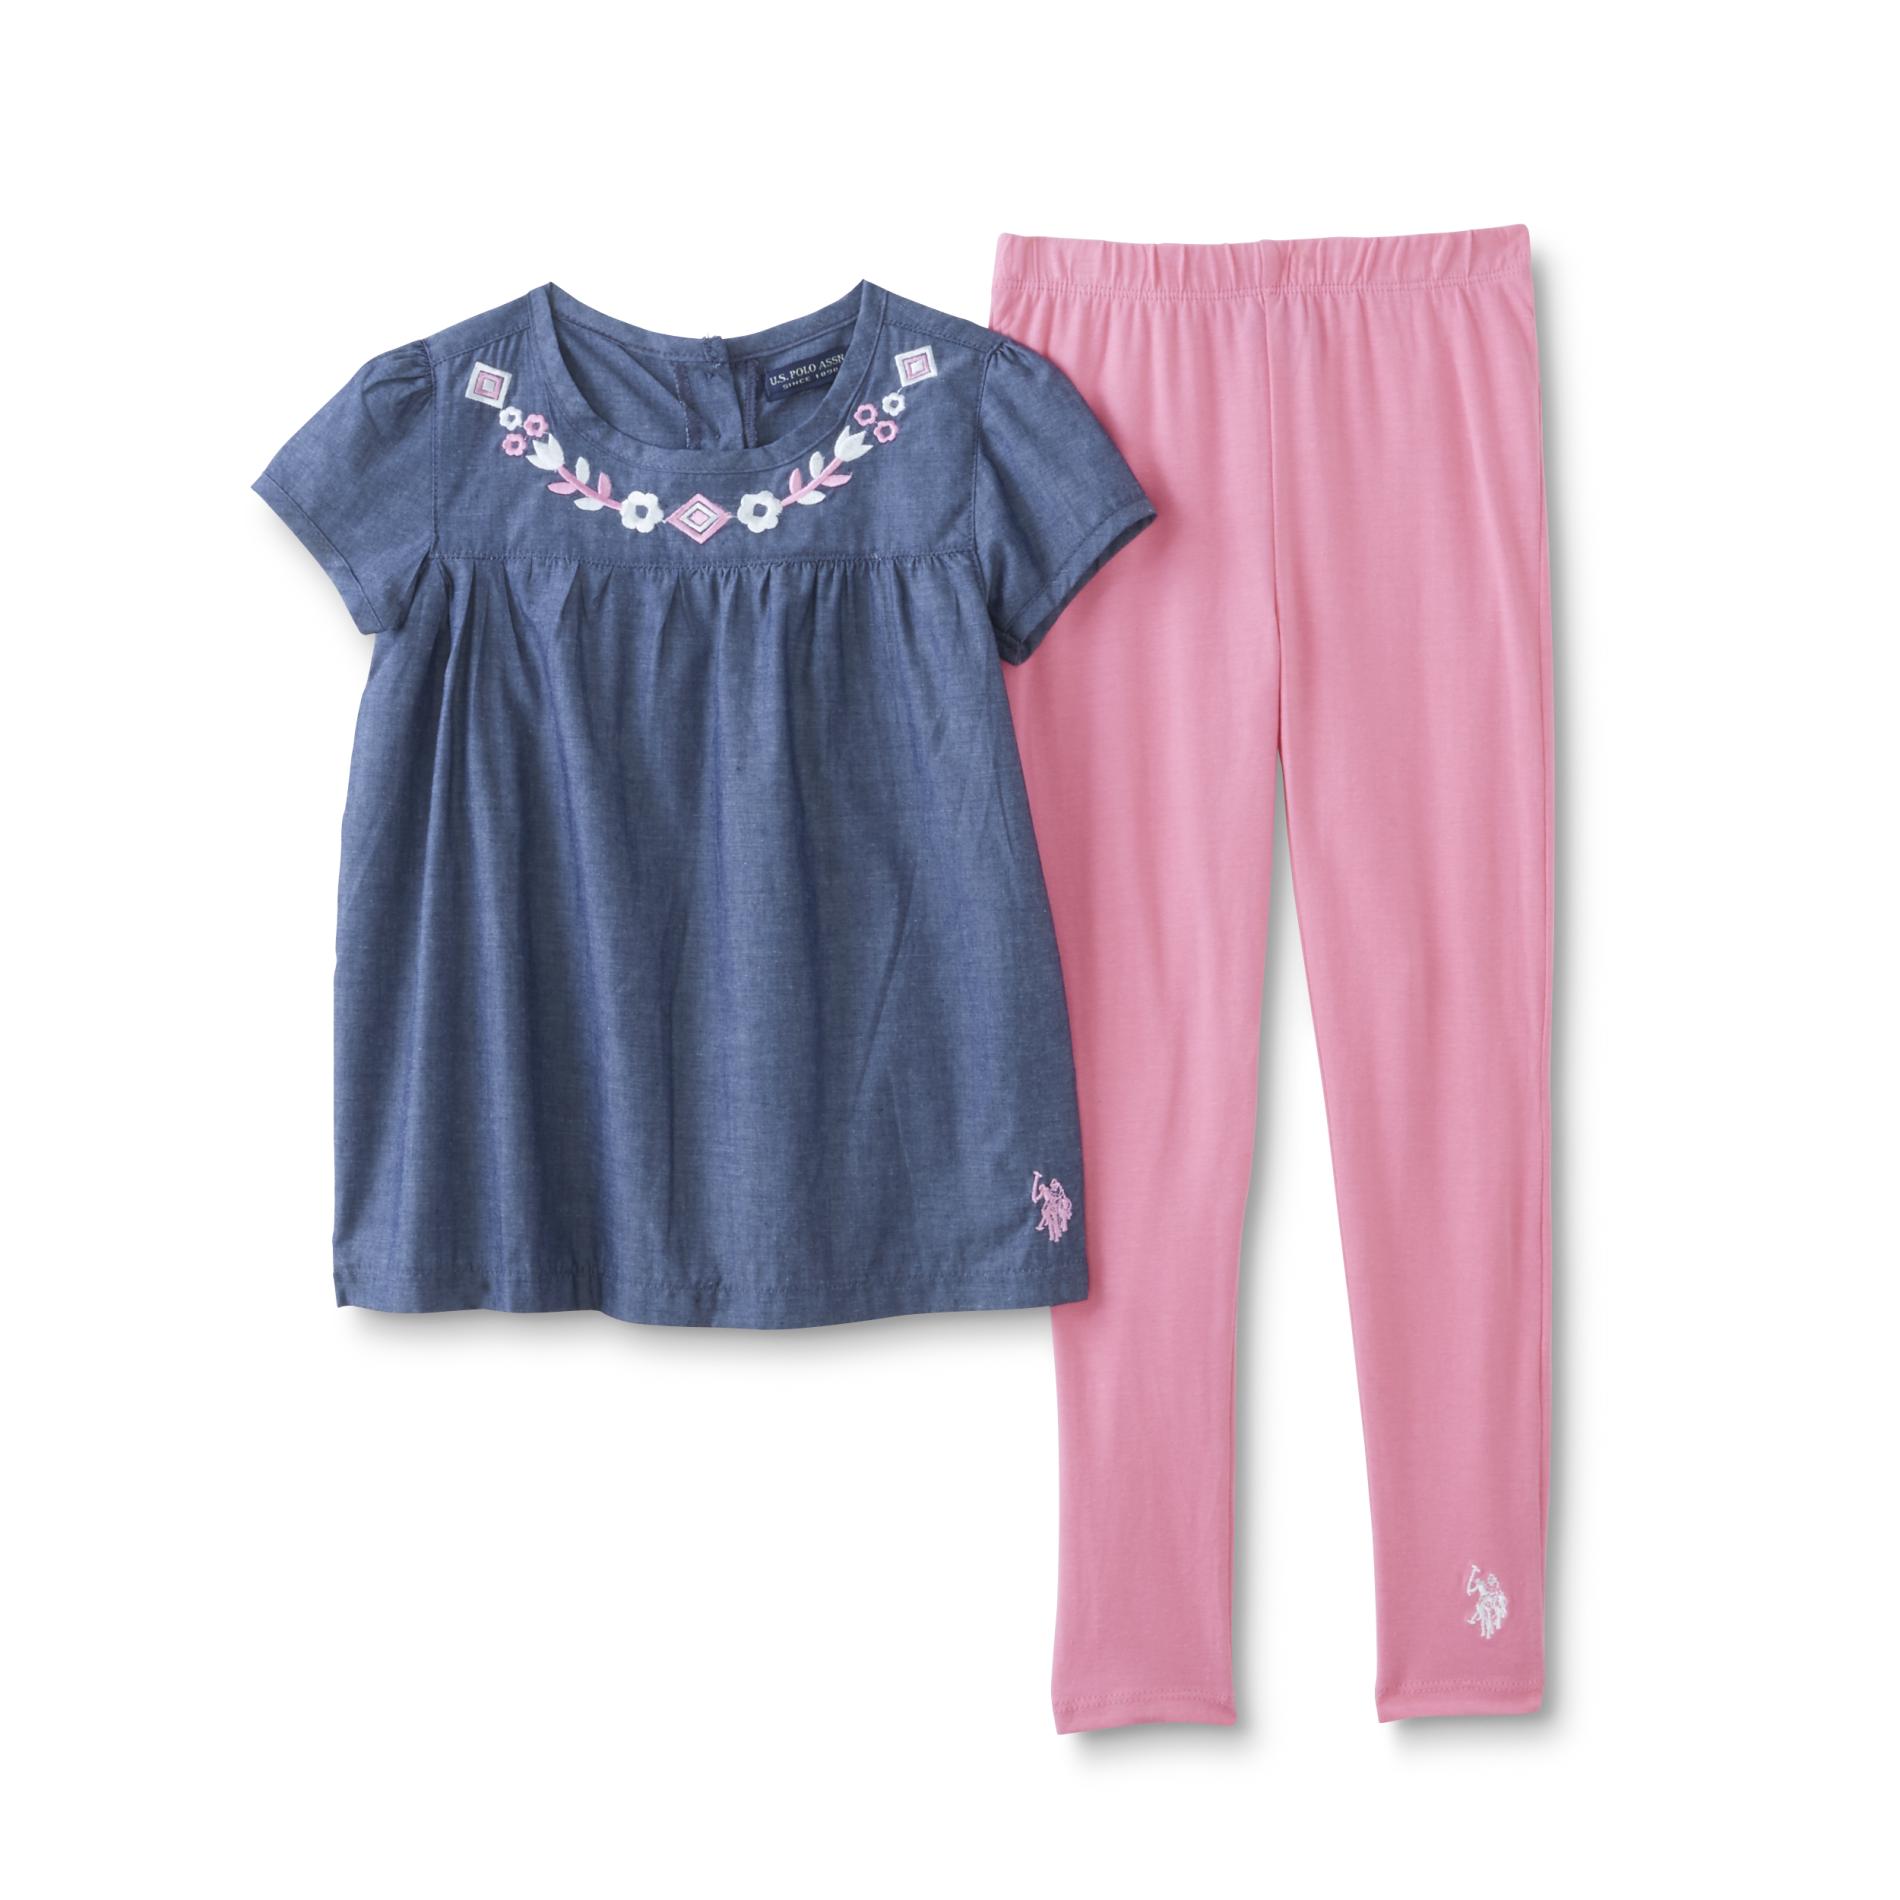 U.S. Polo Assn. Infant & Toddler Girls' Tunic & Leggings